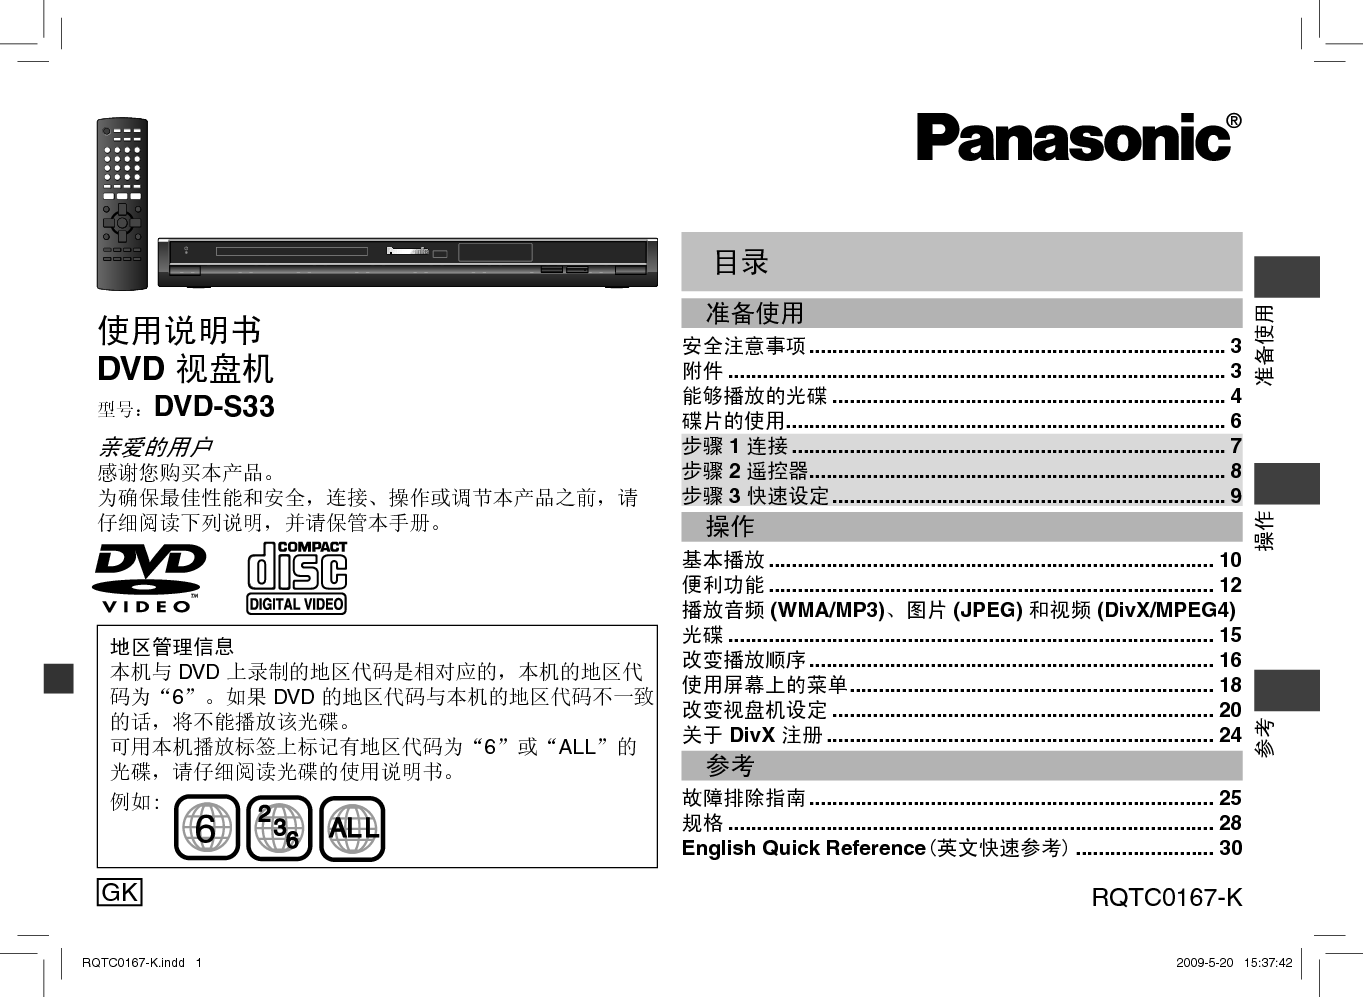 松下 Panasonic DVD-S33 说明书 封面